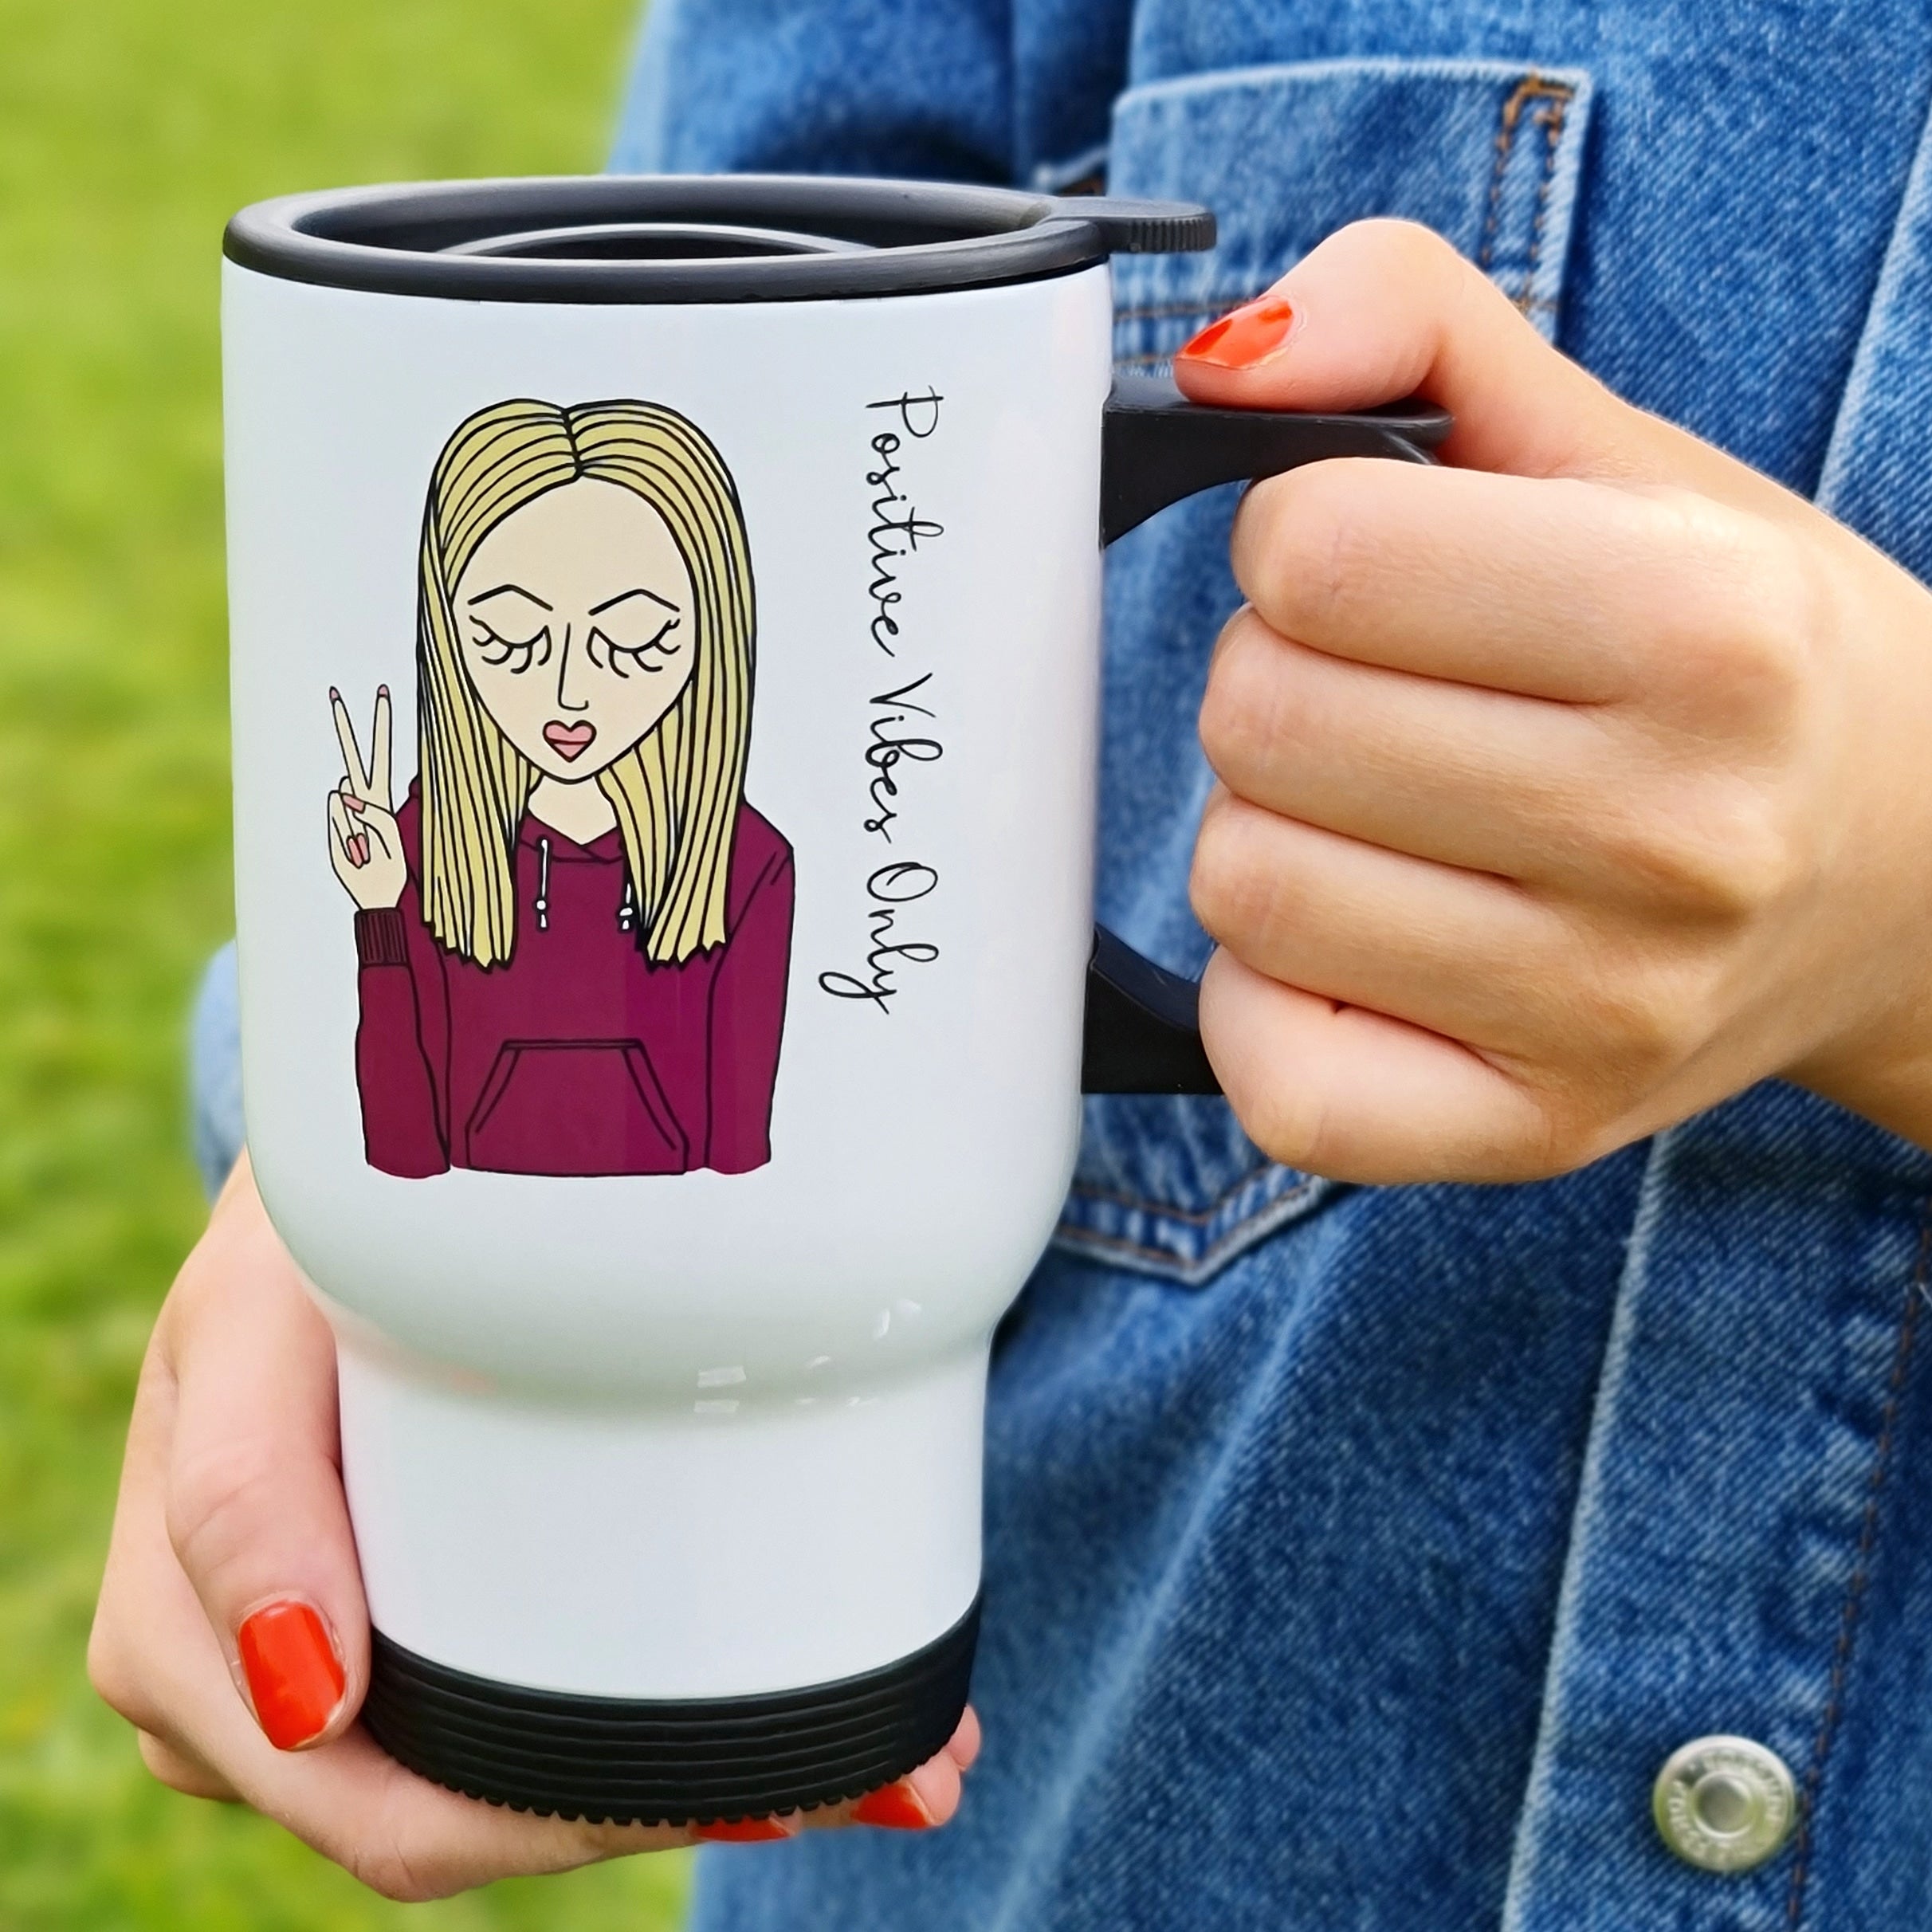 The Personalised Travel Mug